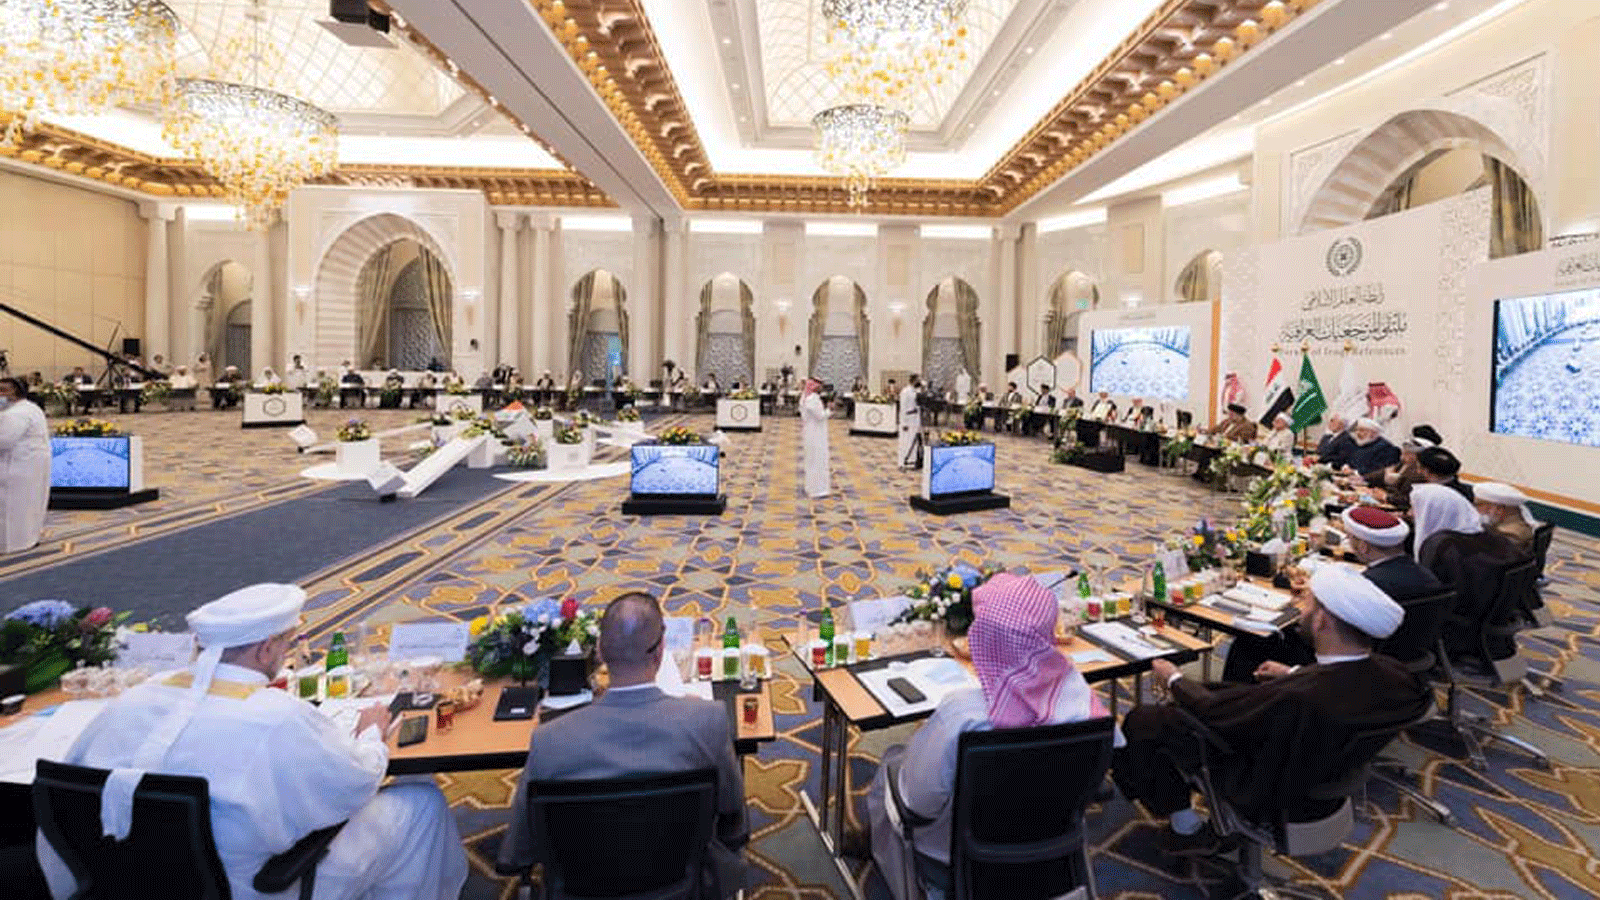 ملتقى المرجعيات الشيعية السنية العراقية في مكة. صورة نشرتها صفحة رابطة العالم الإسلامي عبر صفحتها الرسمية على 